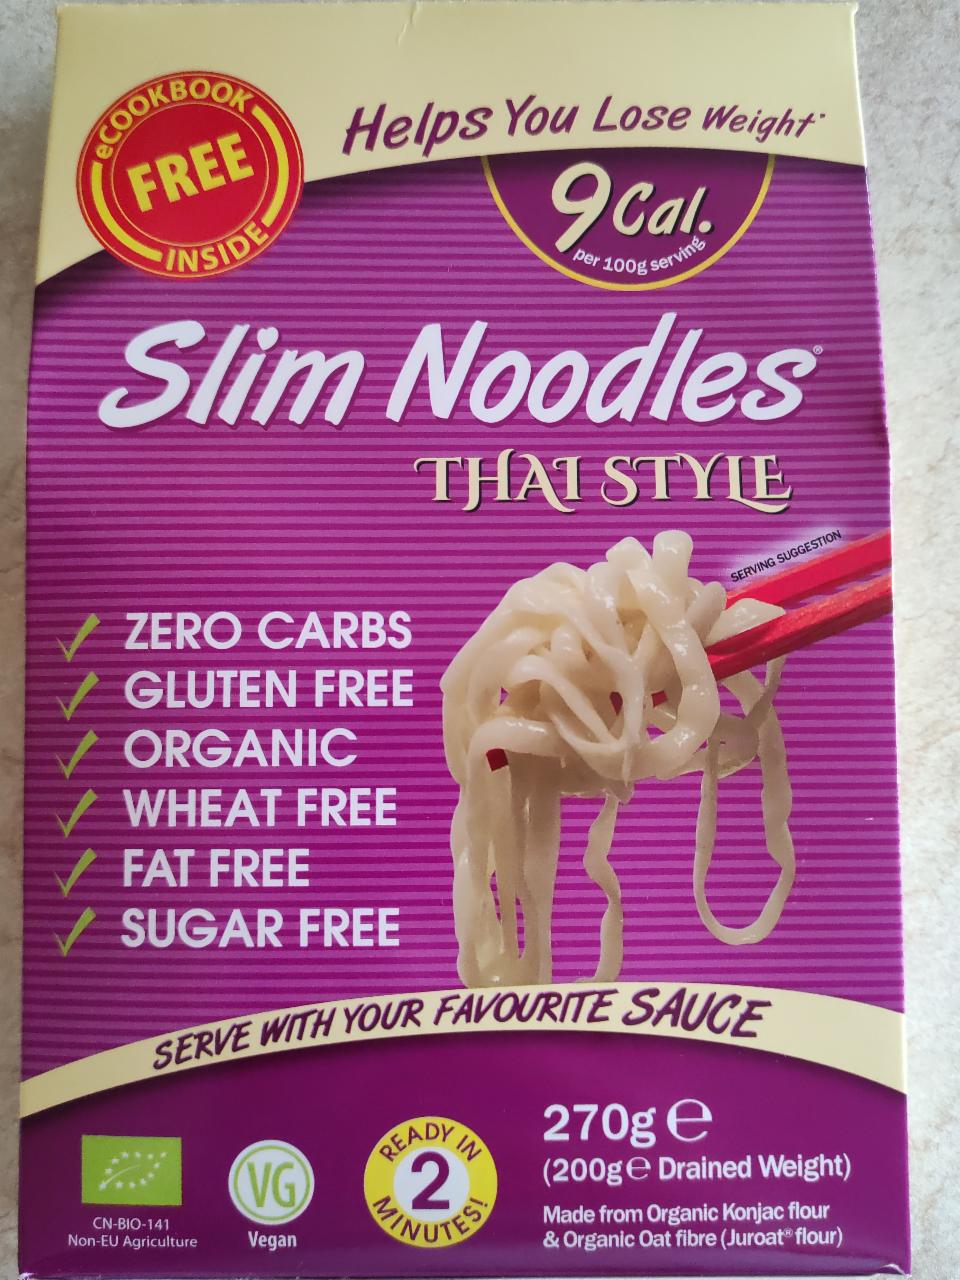 Fotografie - slim noodles thai style 9kcal